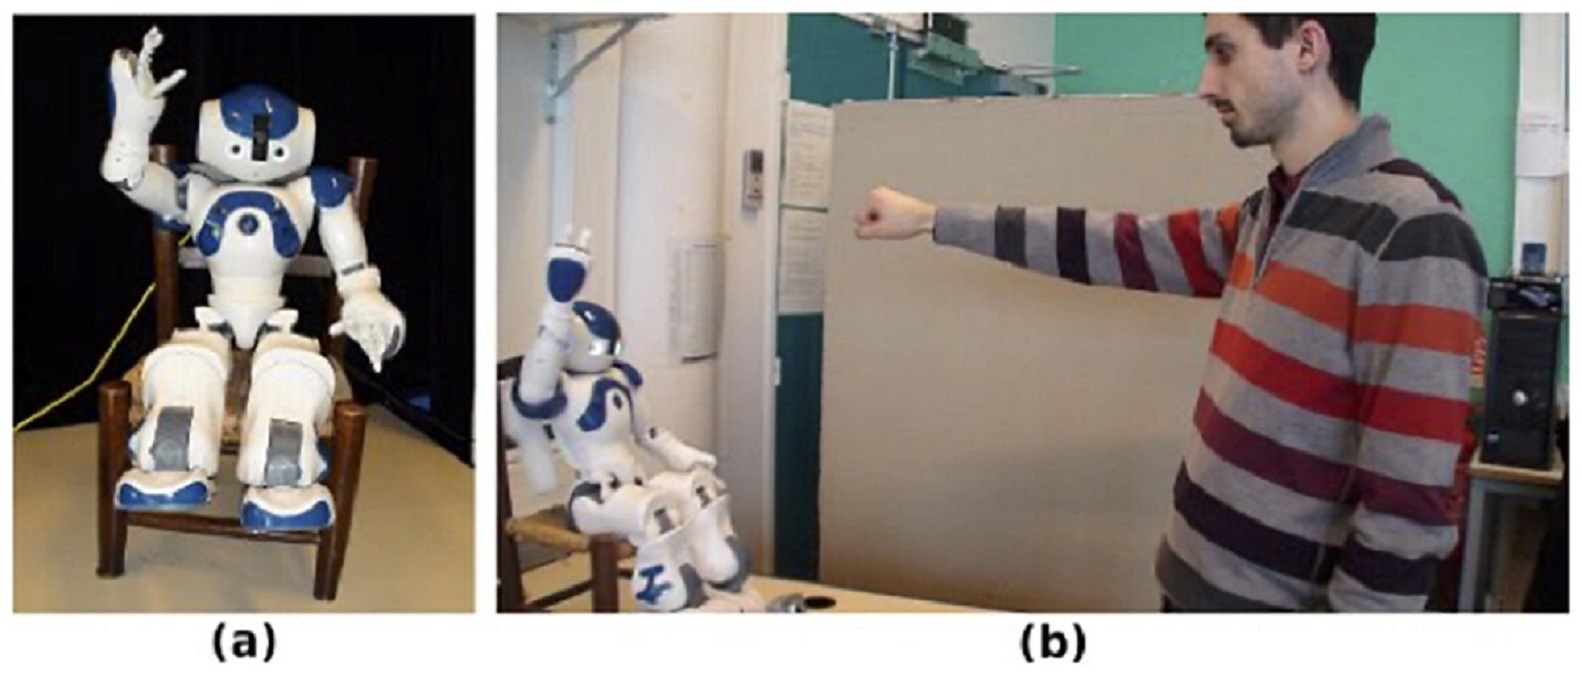 Naukowcy odkryli, że przebywając w towarzystwie robotów robimy bardzo podobne rzeczy